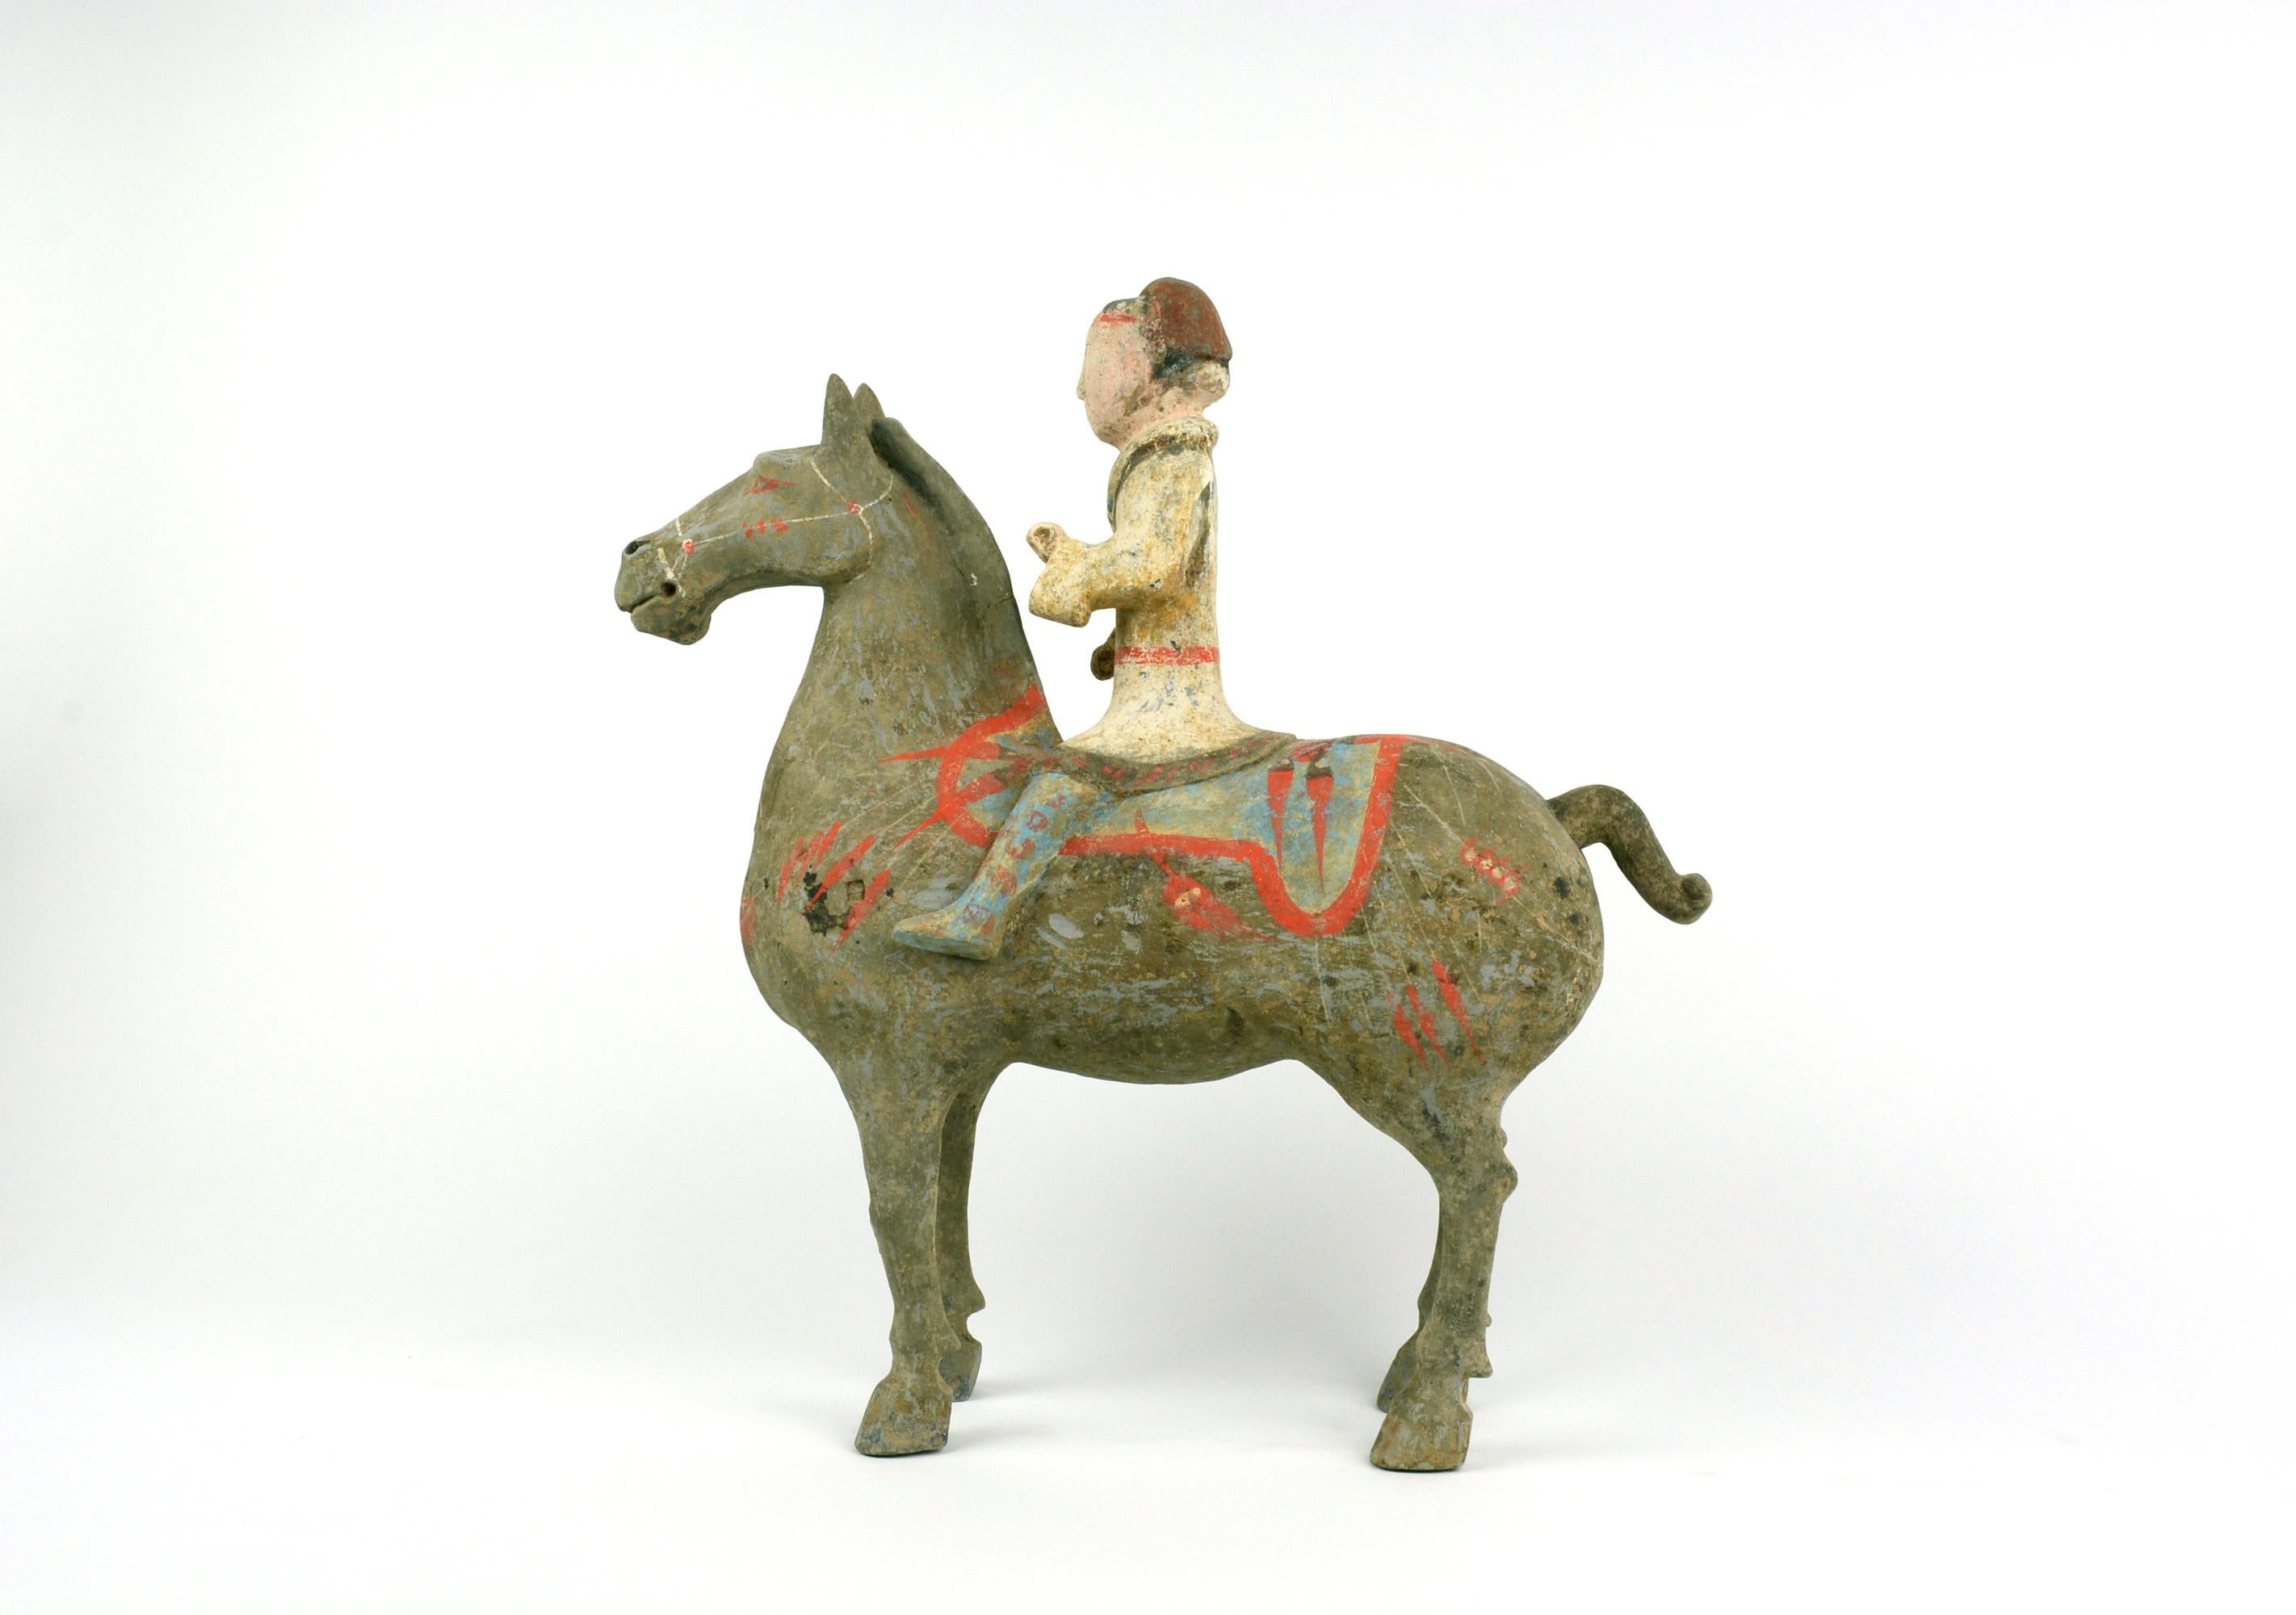 
Han Reiten	12h
Dieser Reiter repräsentiert den Standard des westlichen Han-Reiters, der in Yang Jiawan von Xian zu finden ist.  Die Technik der Herstellung umfasst das Gießen, Gravieren und Kaltbemalen.  Das Terrakottastück wurde zunächst geformt